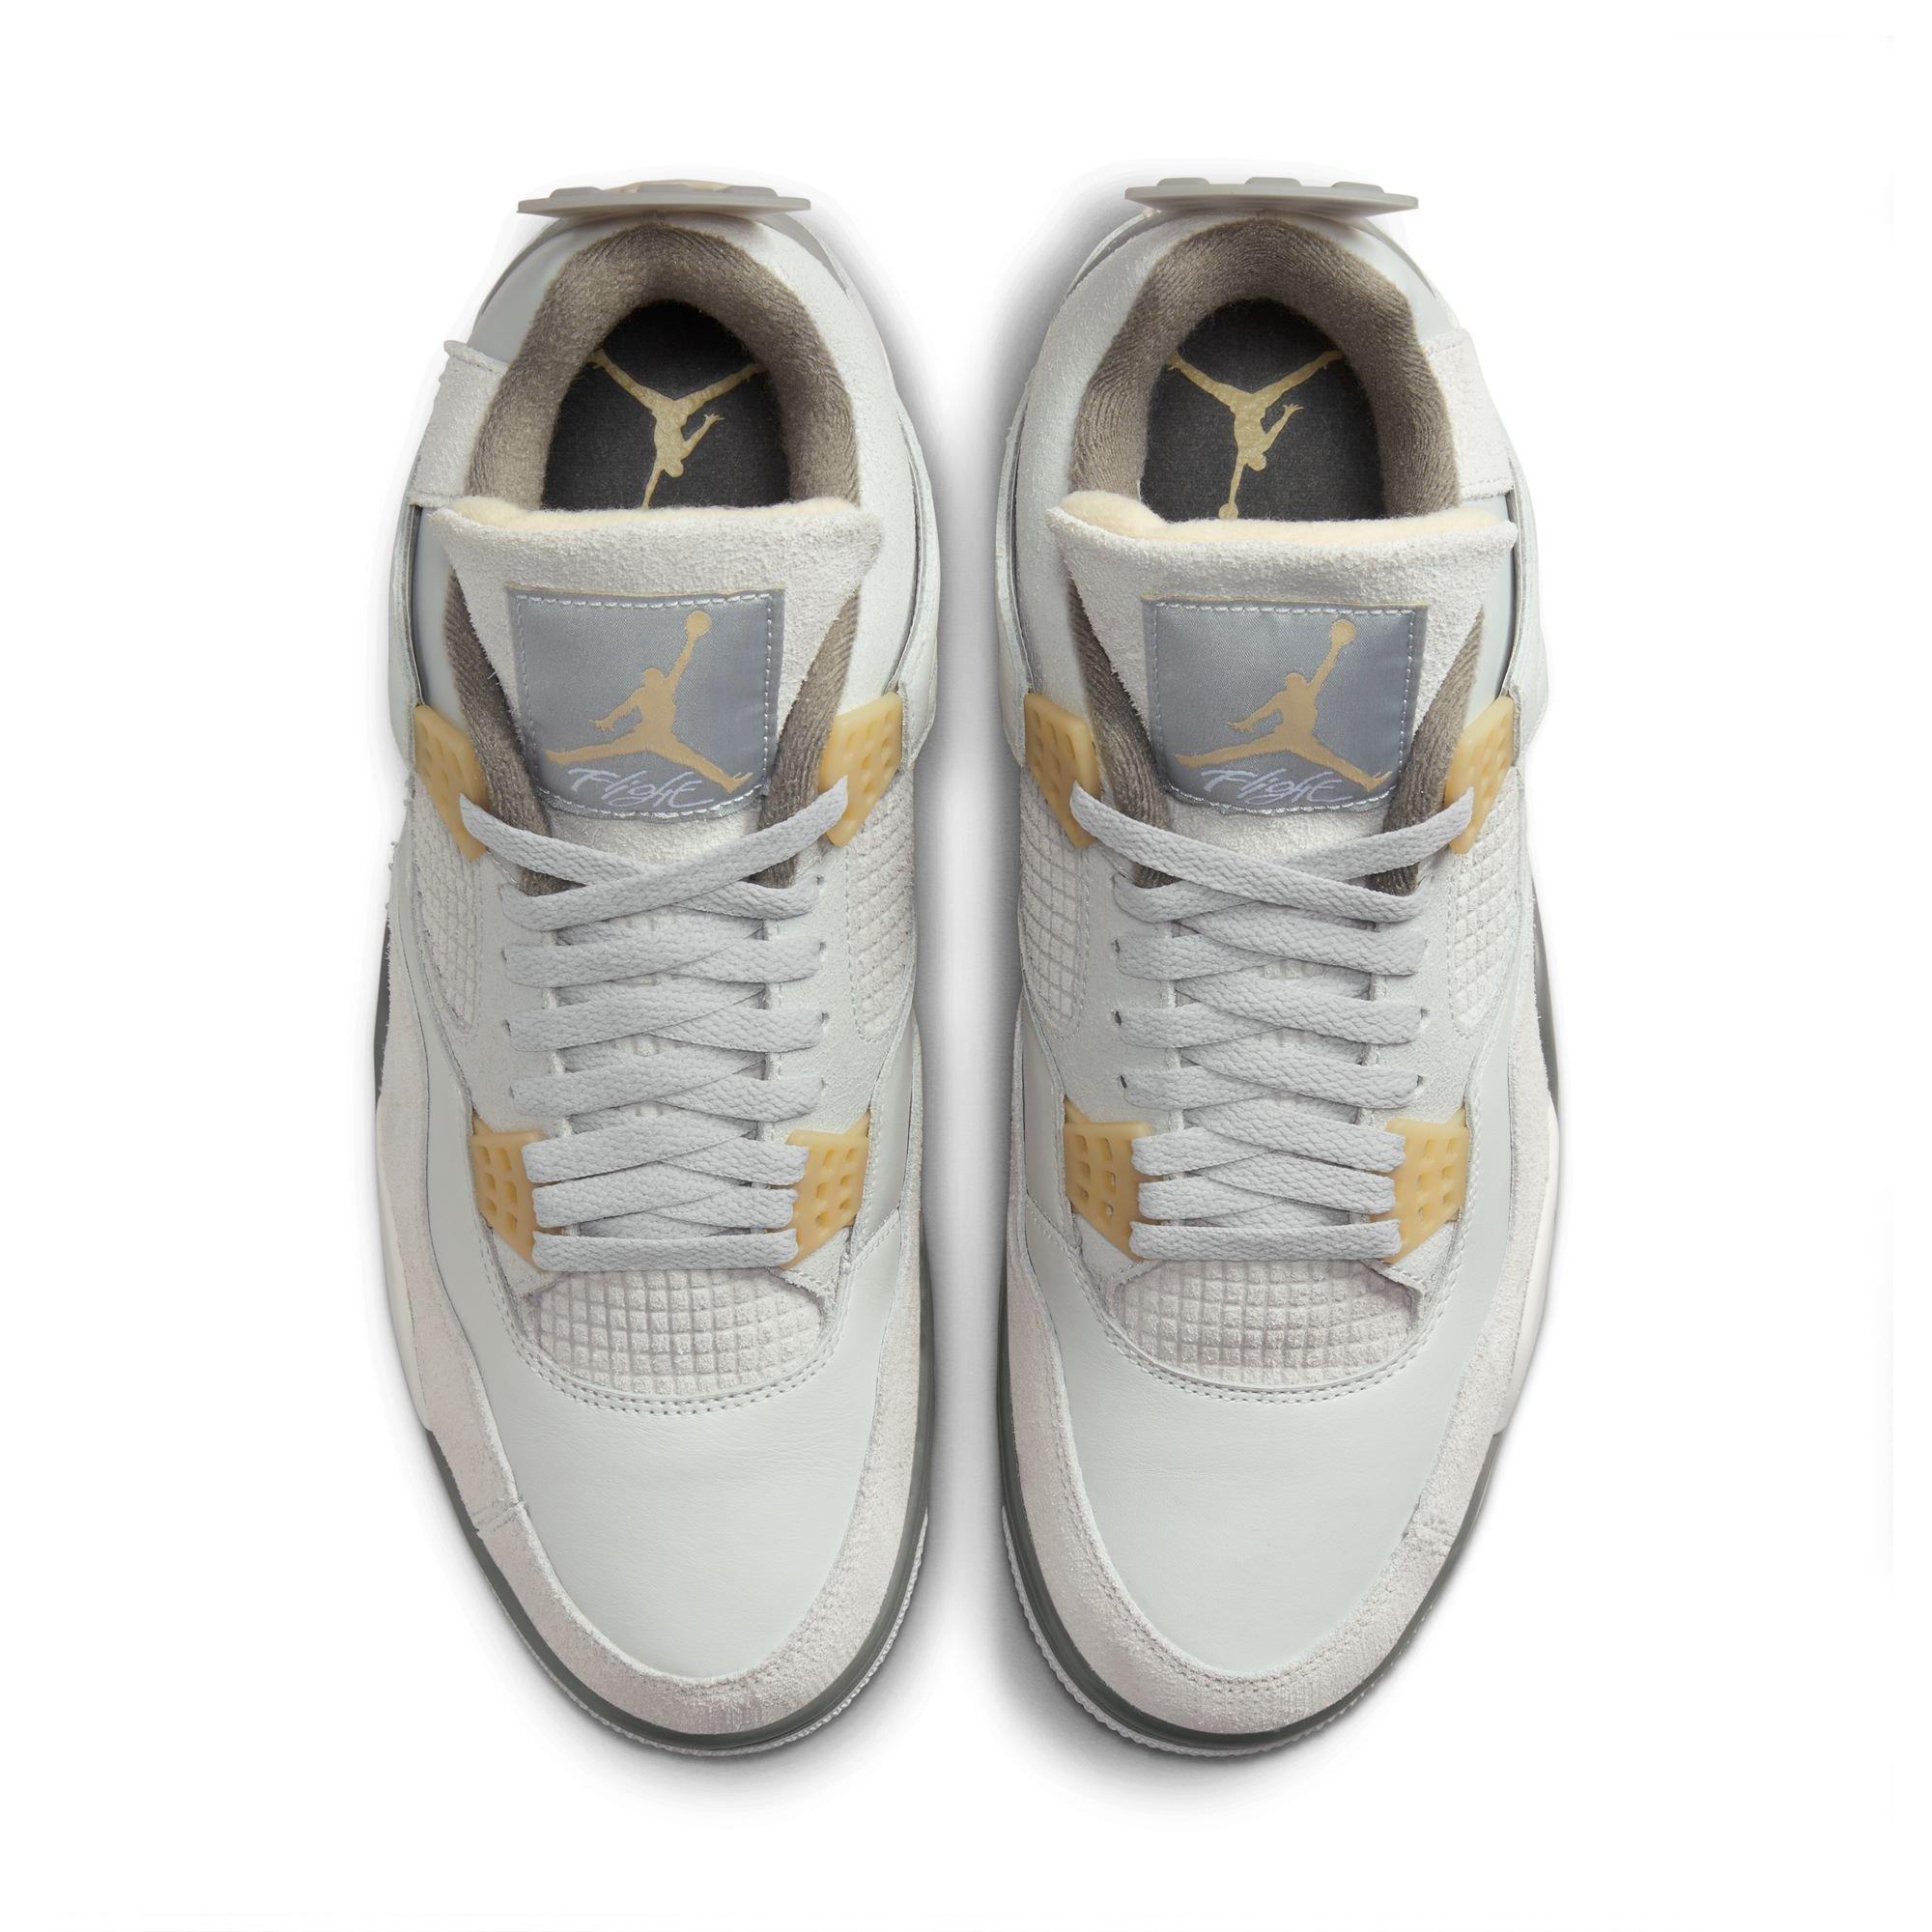 Jordan Release Dates - Nike Air Force 1 x Air Jordan 4 Hybrid Cop